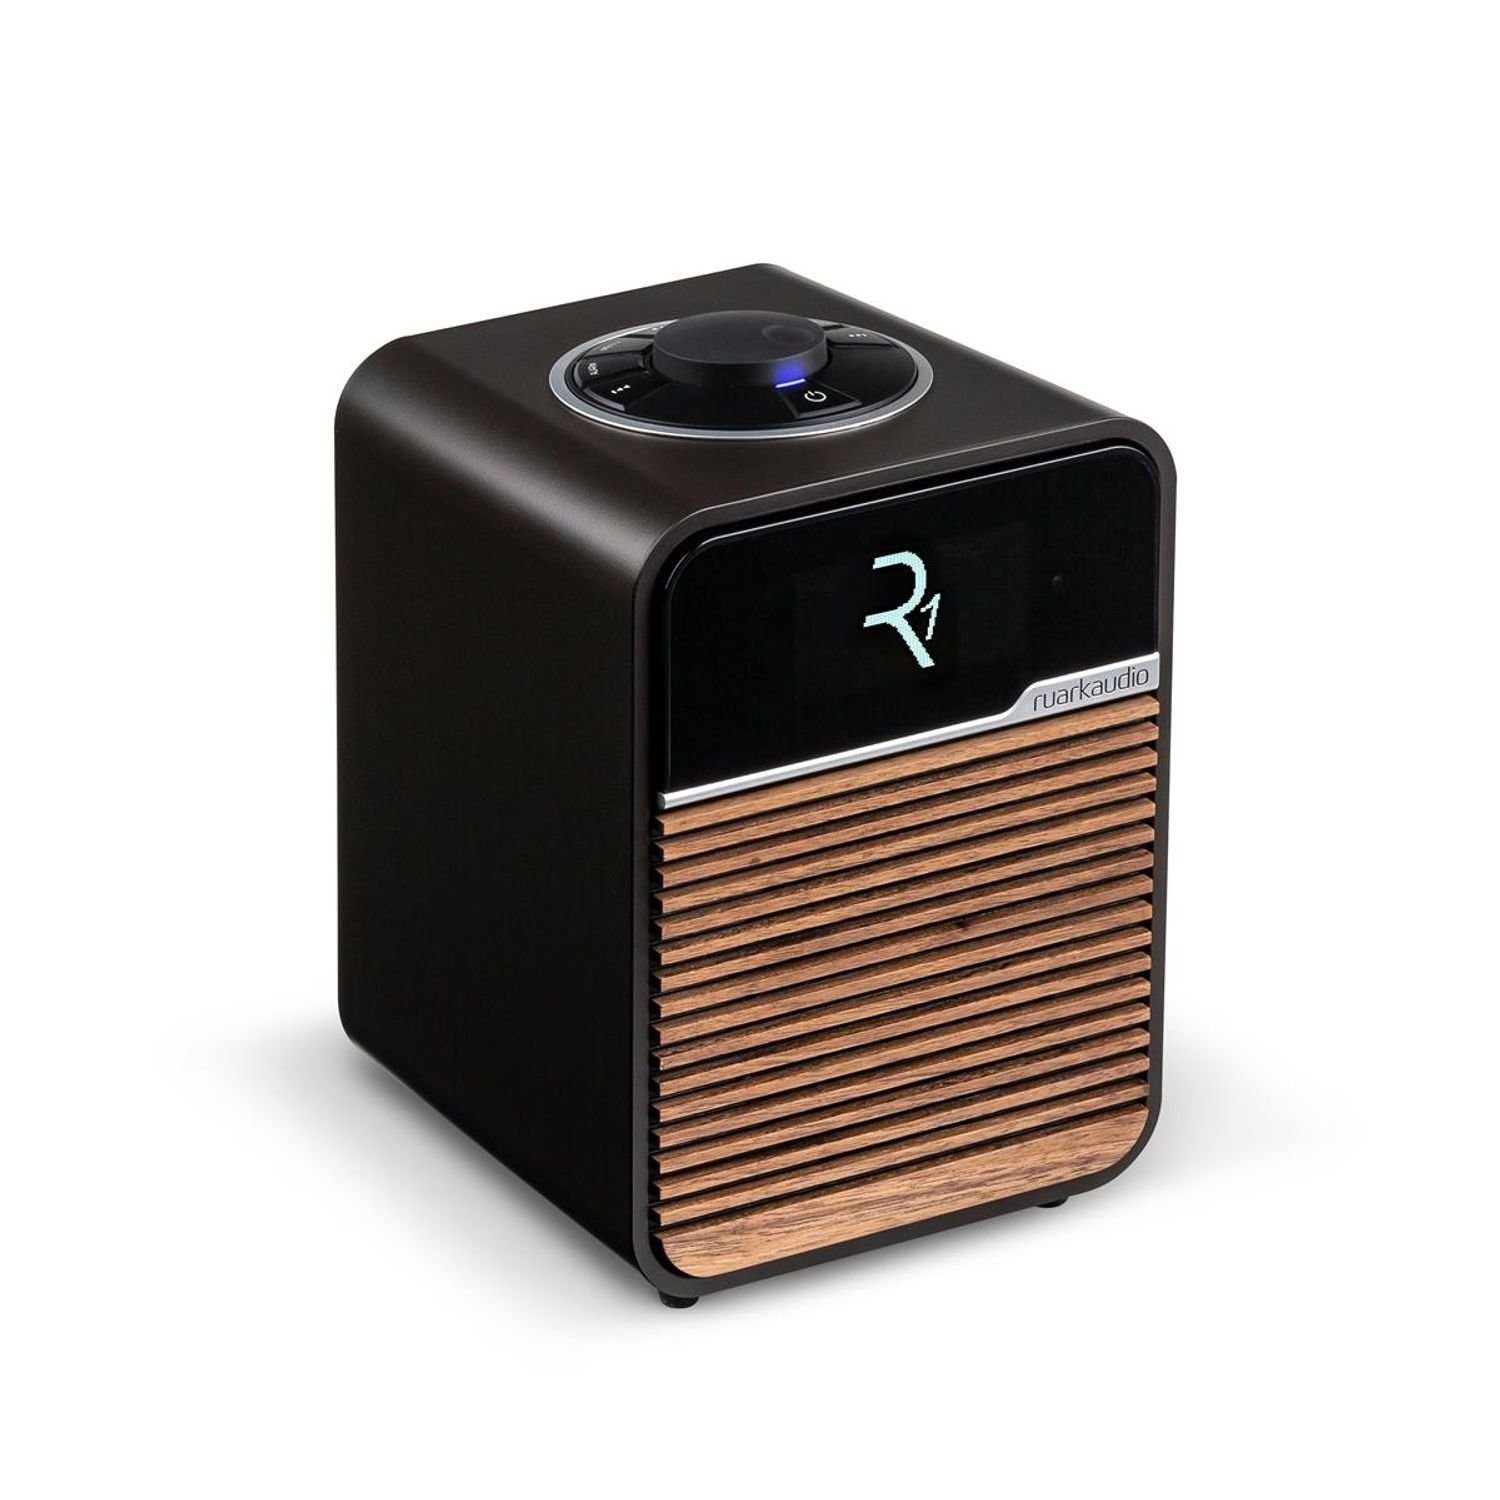 ruarkaudio ruark audio R1 Radio für Digitalradio (DAB, FM & Bluetooth und (DAB) DAB+ DAB+ UKW Espresso Tuner) Deluxe mit Digitalradio